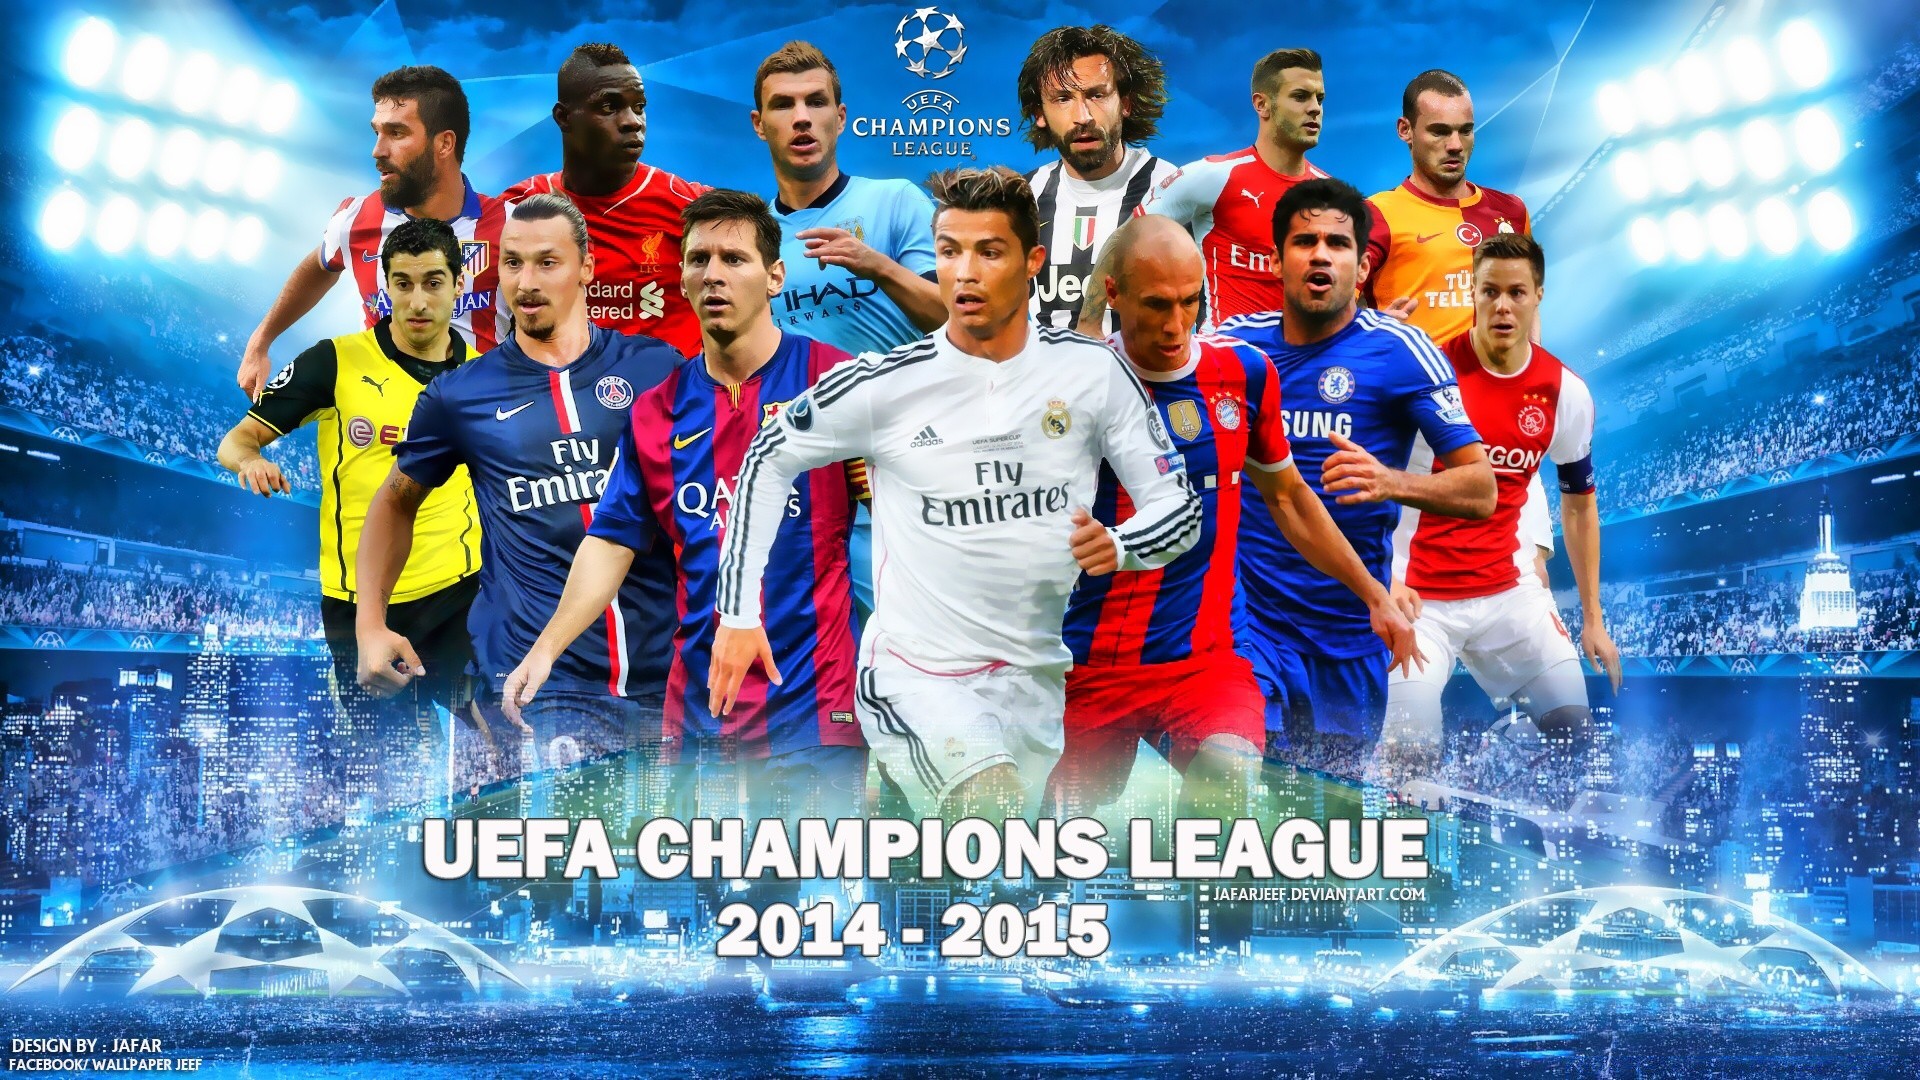 Спортс лига. Лига чемпионов. Футбольная обложка. Обложка футбольной группы. UEFA Champions League футбол.